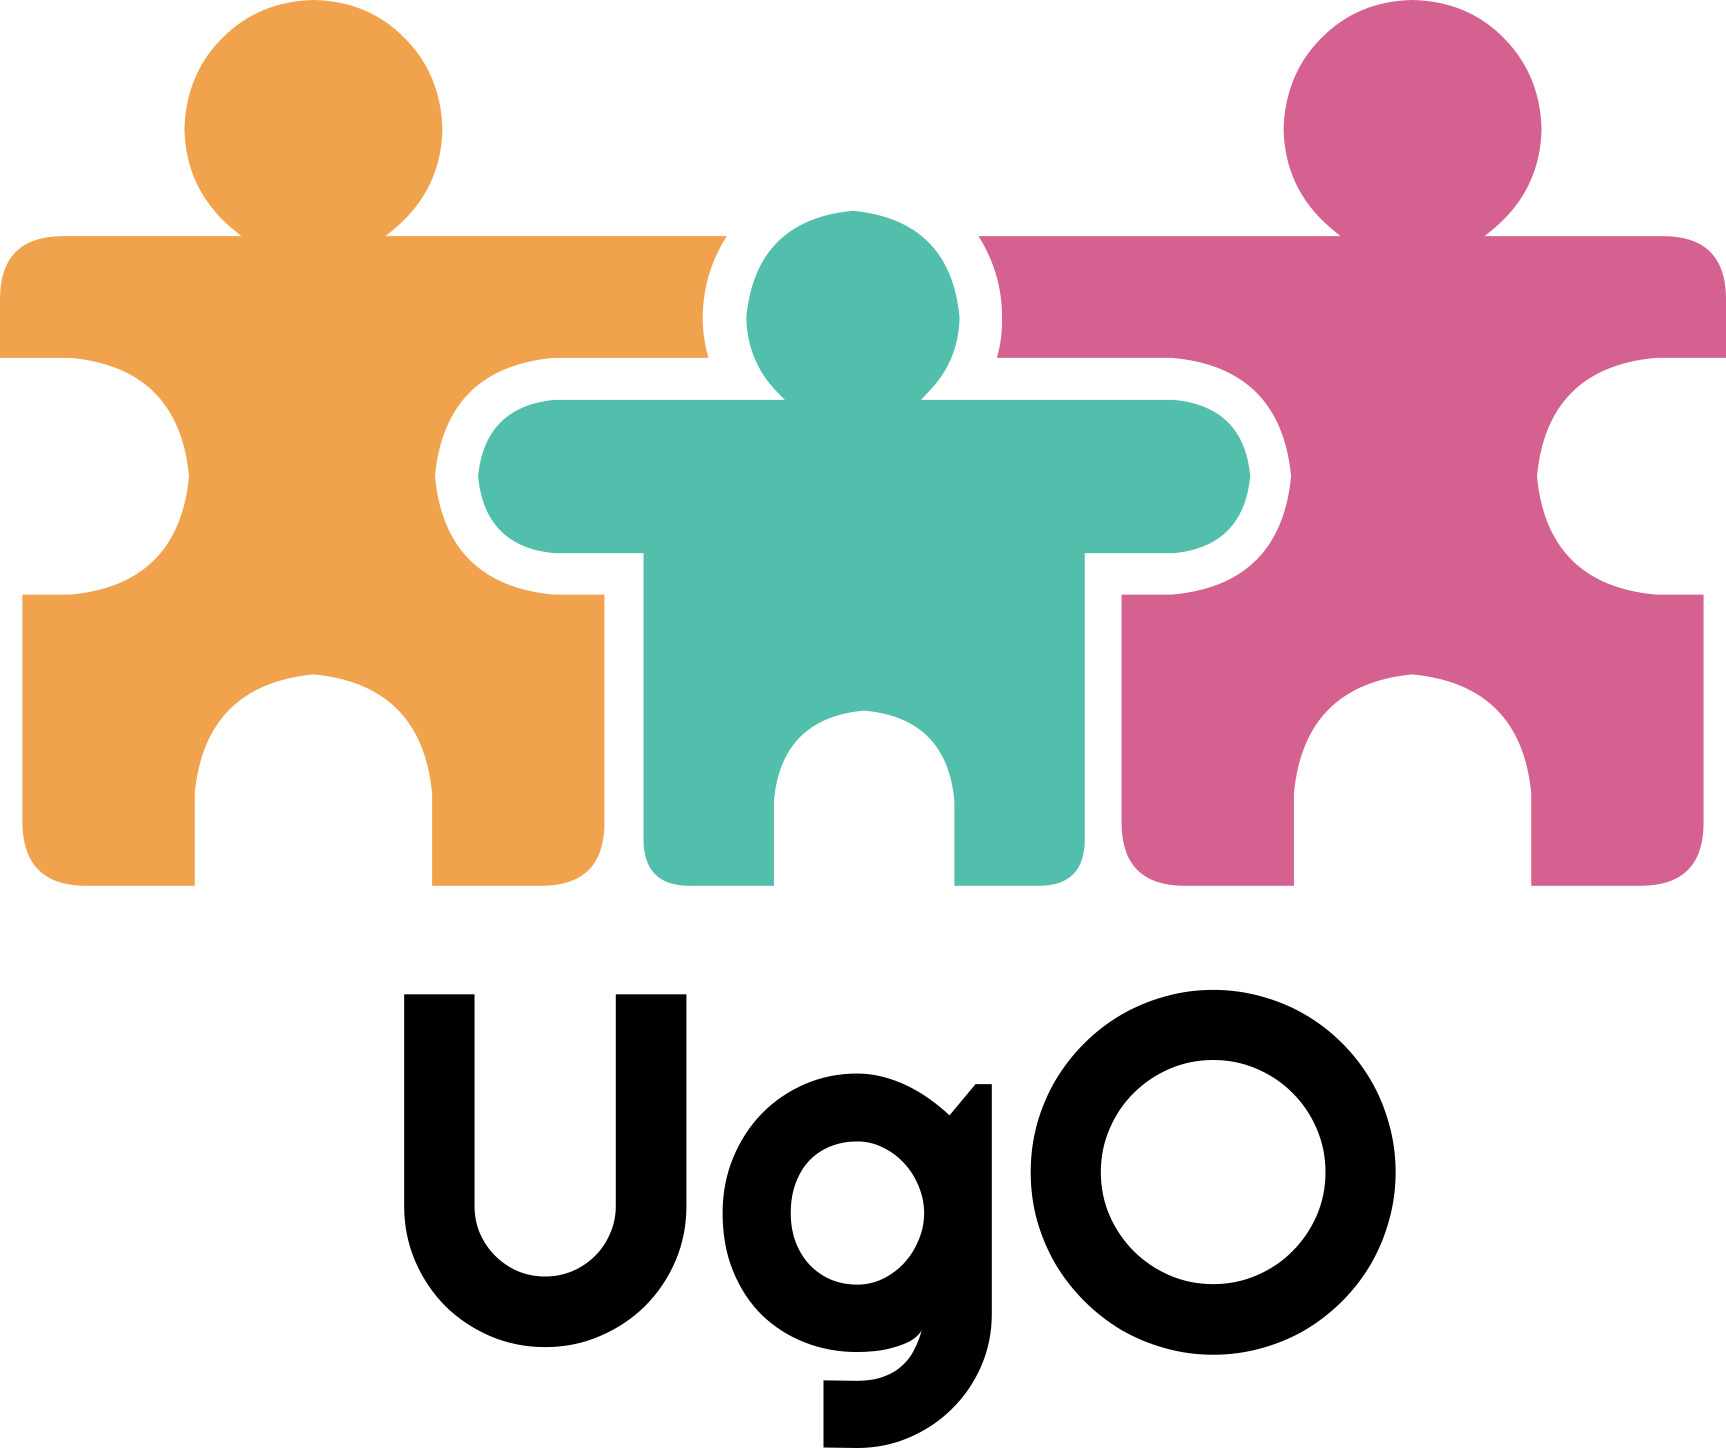 Le logiciel UgO